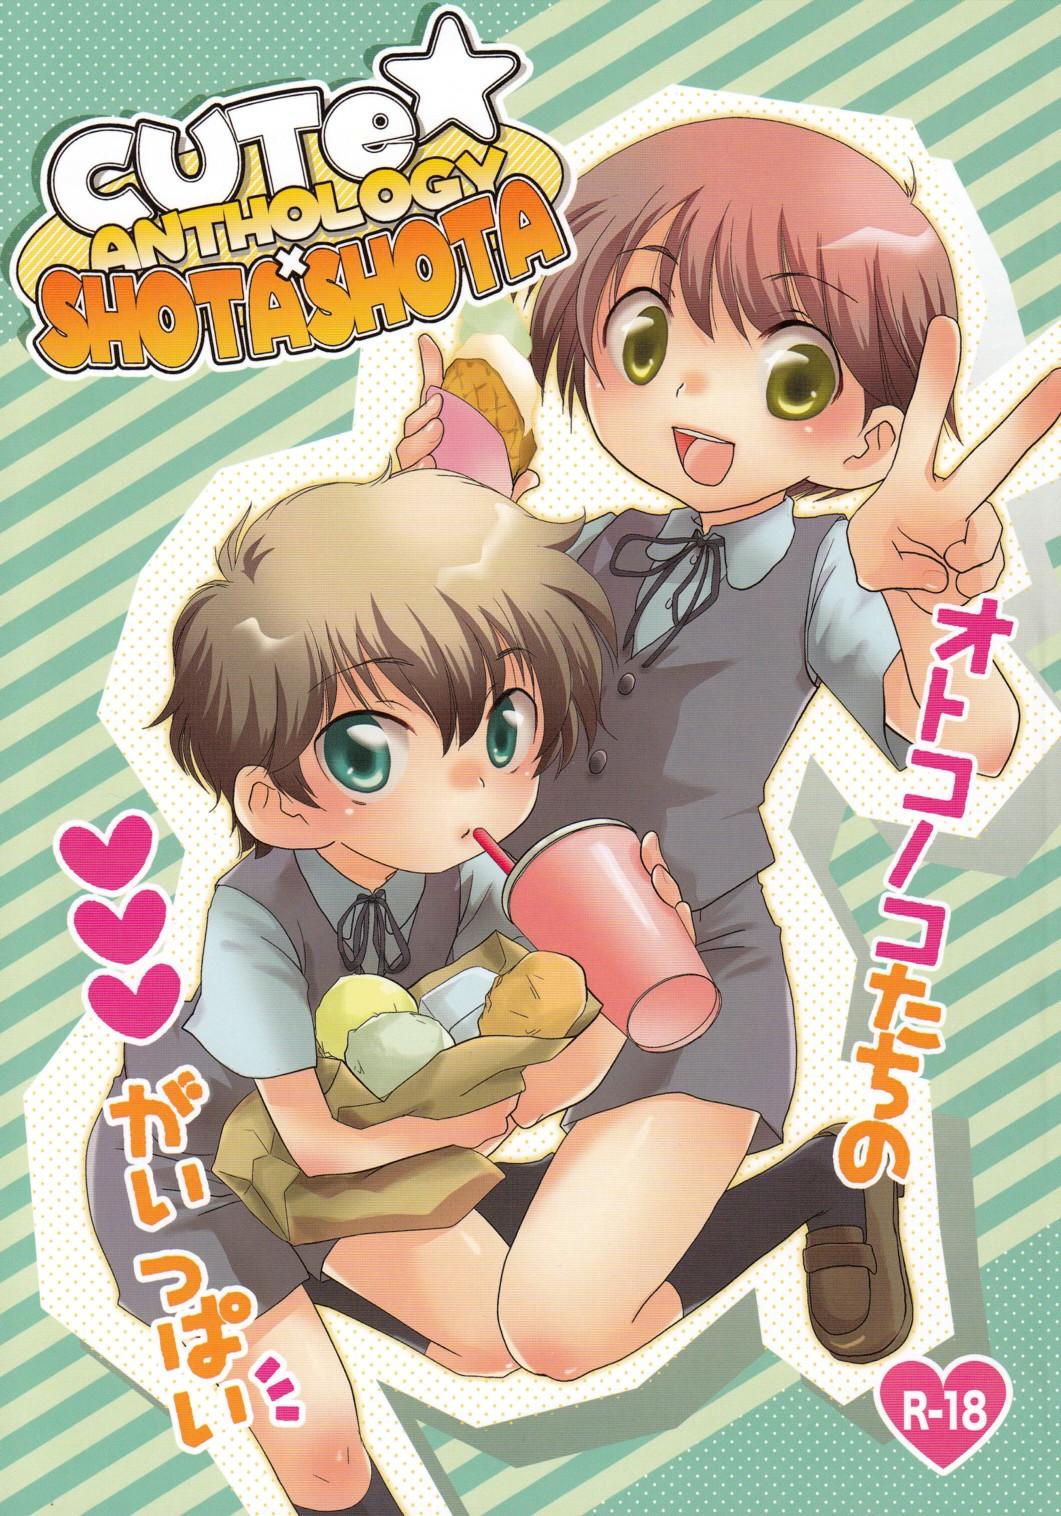 Cute Anthology Shota x Shota 0